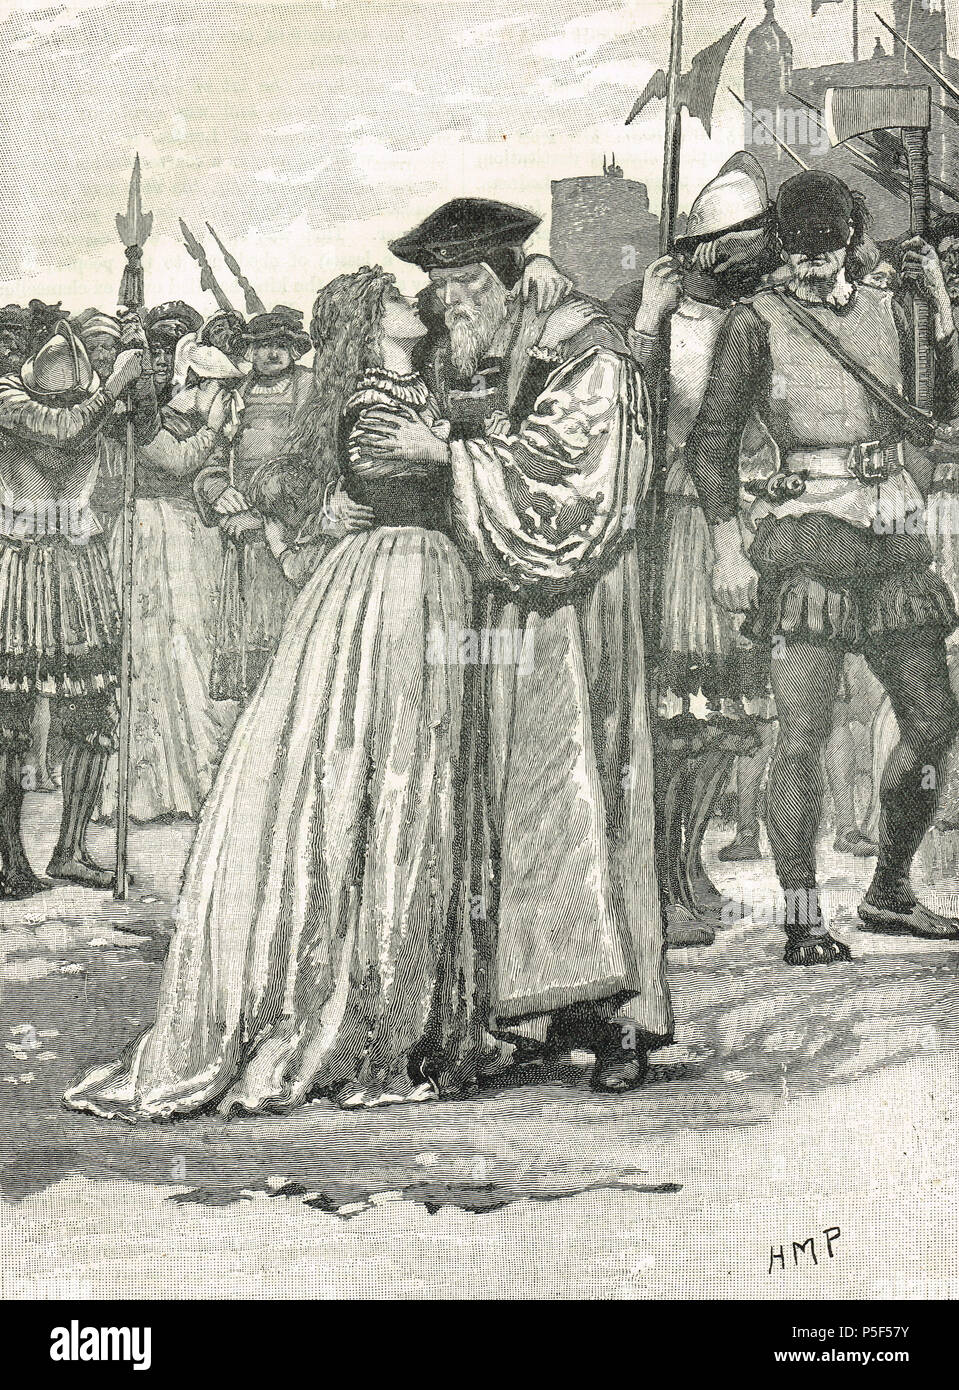 Margaret Roper Abschied von ihrem Vater, Sir Thomas More, Tower Wharf, an seiner Ausführung vom 6. Juli 1535 Stockfoto